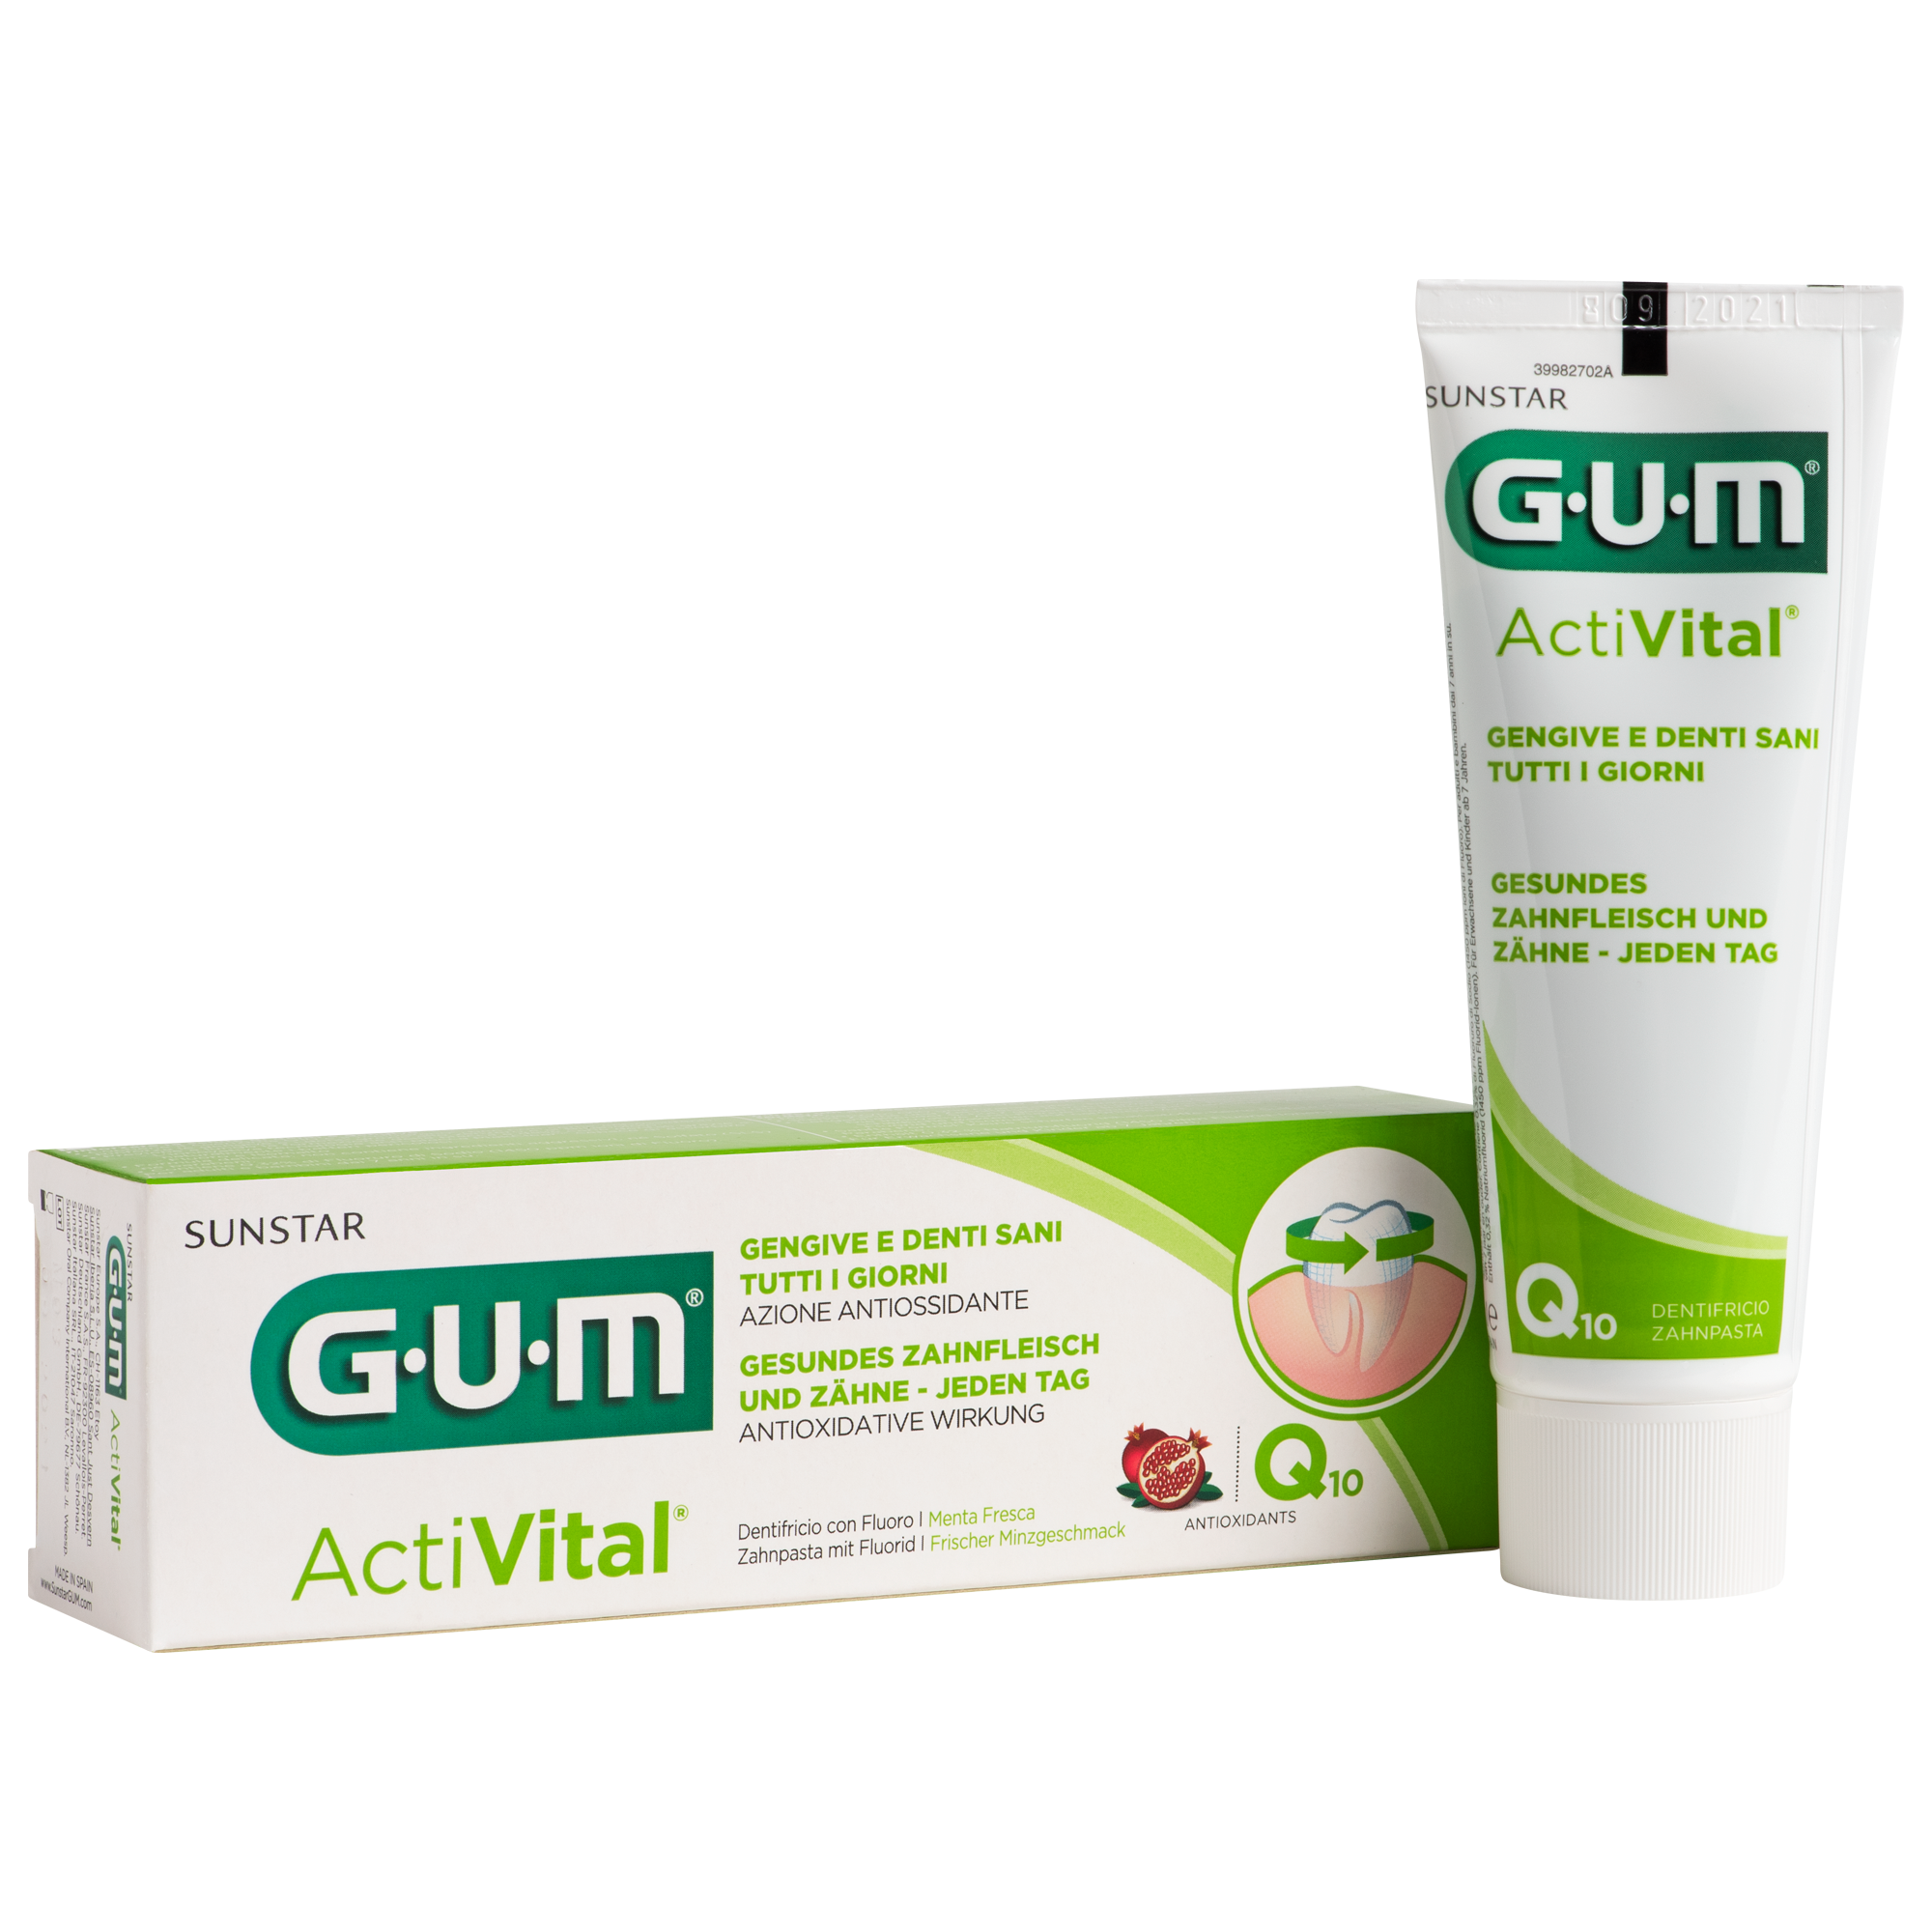 P6050-DE-IT-GUM-Activital-Toothpaste-75ml-Box-Tube.png